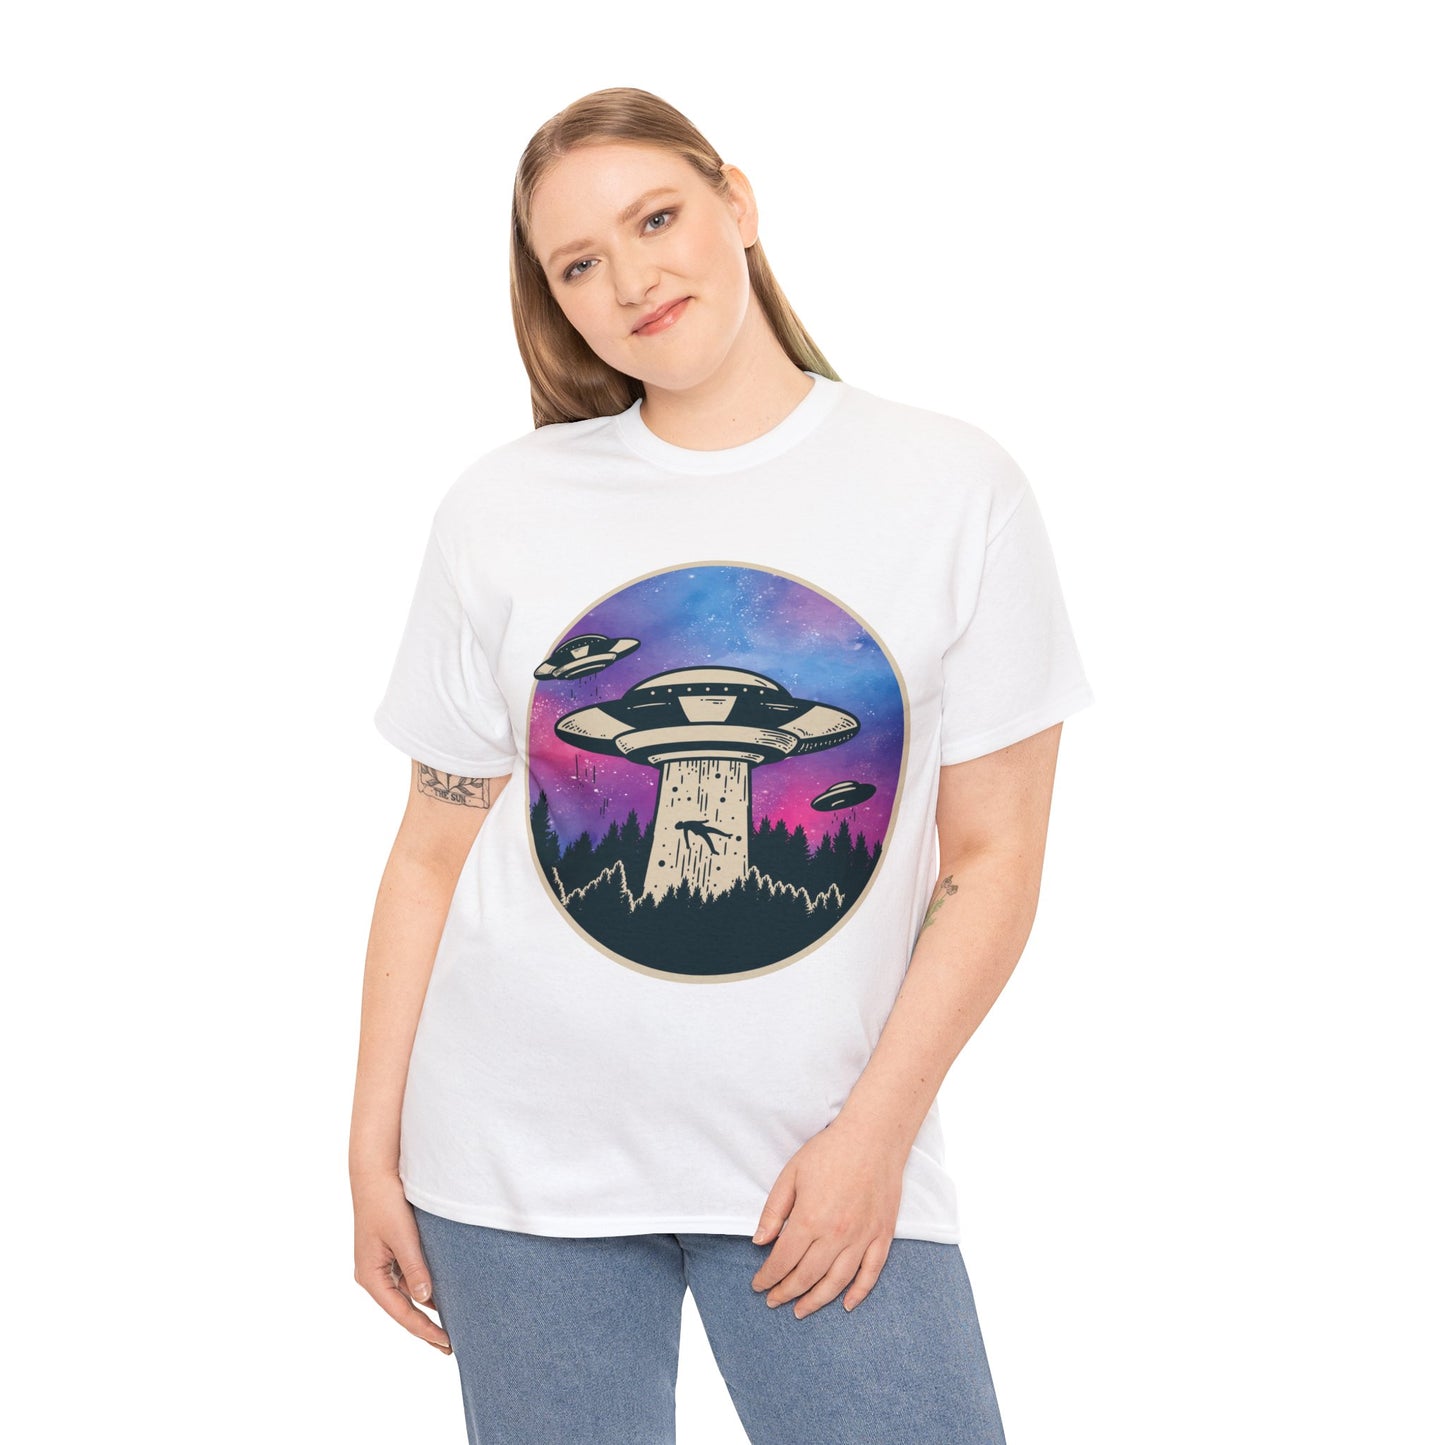 Alien Abduction UFO Funny Graphic Designer Tee